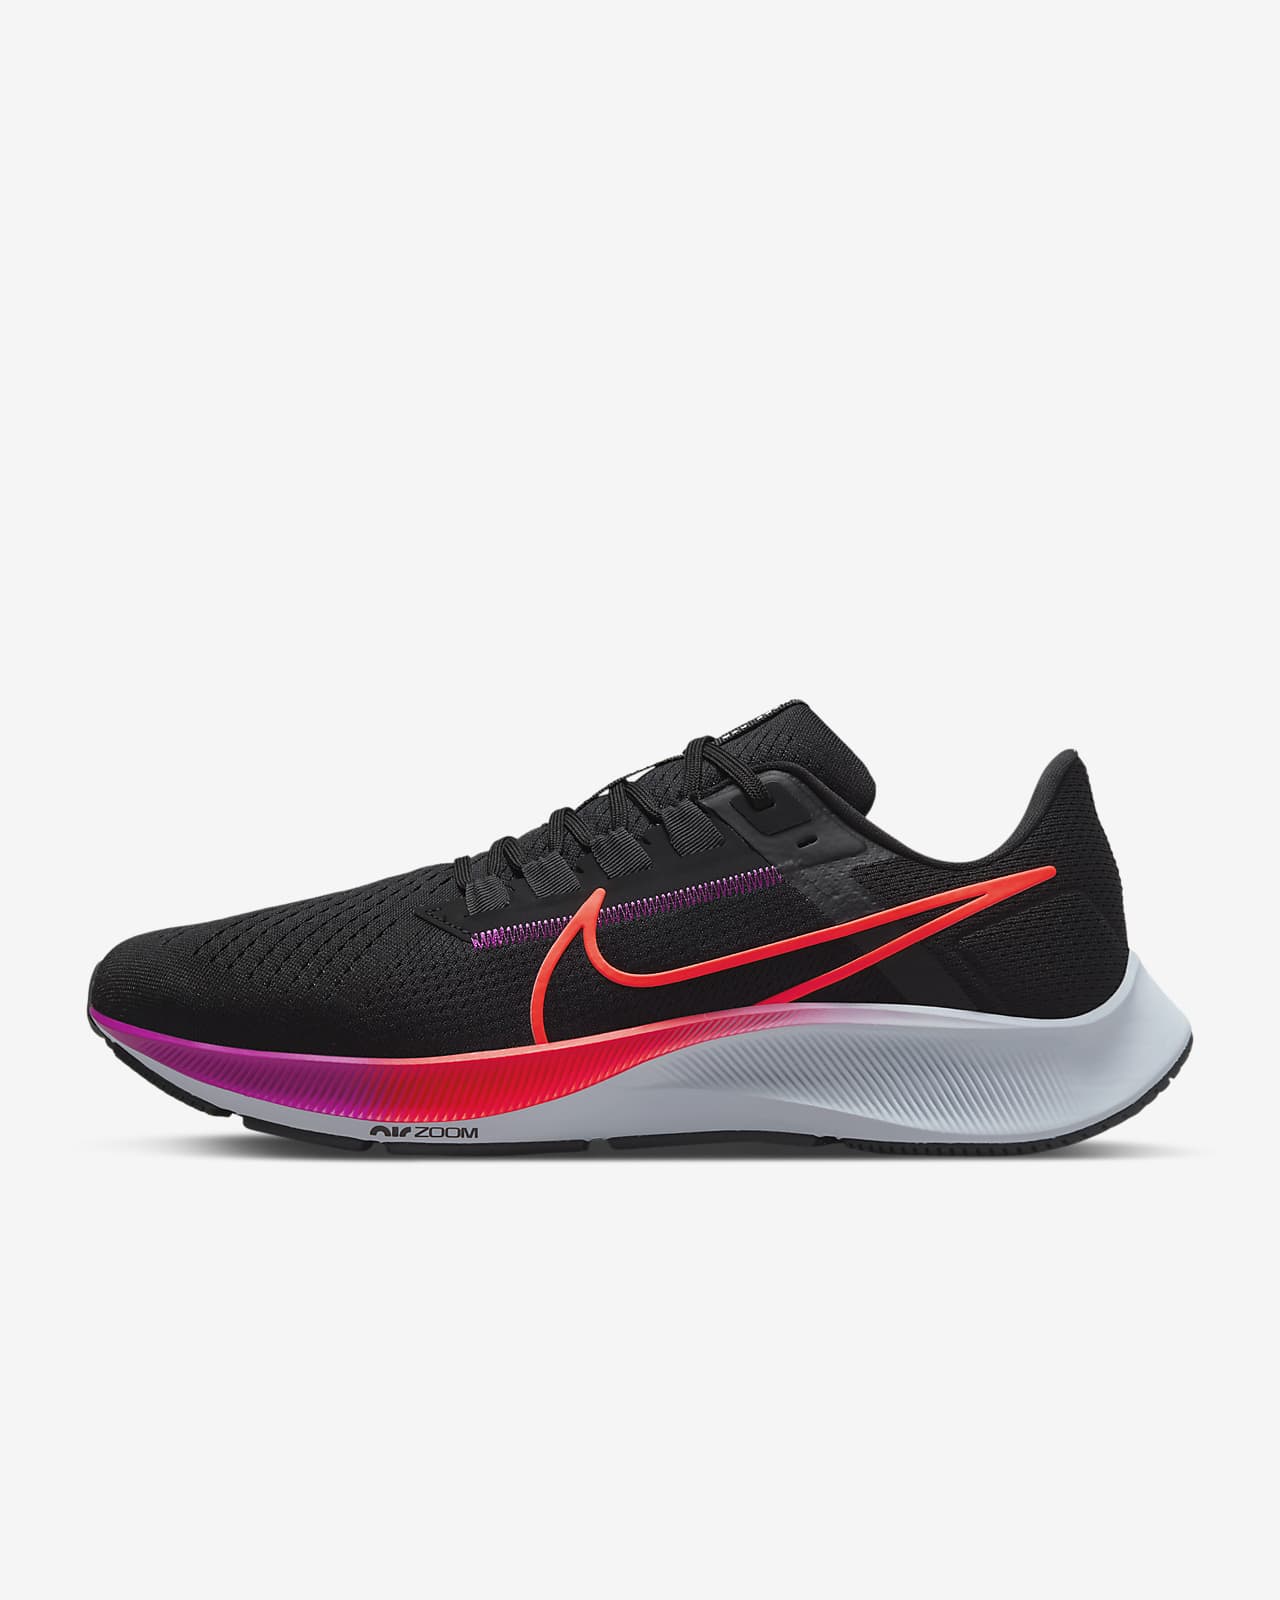 Laster Vaardig ik wil Nike Pegasus 38 Men's Road Running Shoes. Nike.com